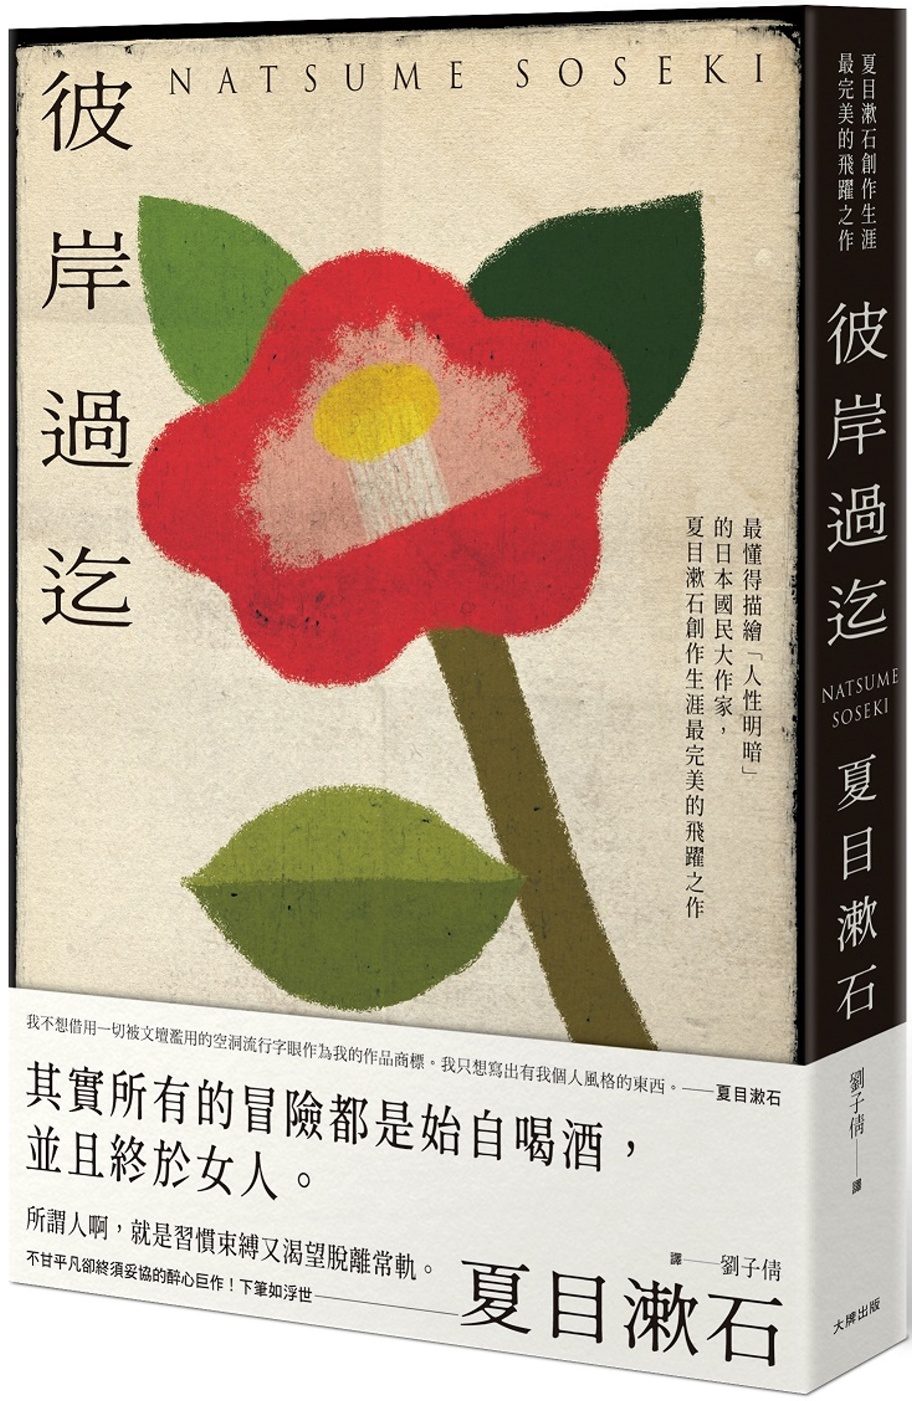 彼岸過迄：最懂得描繪「人性明暗」的日本國民大作家，夏目漱石創作生涯最完美的飛躍之作